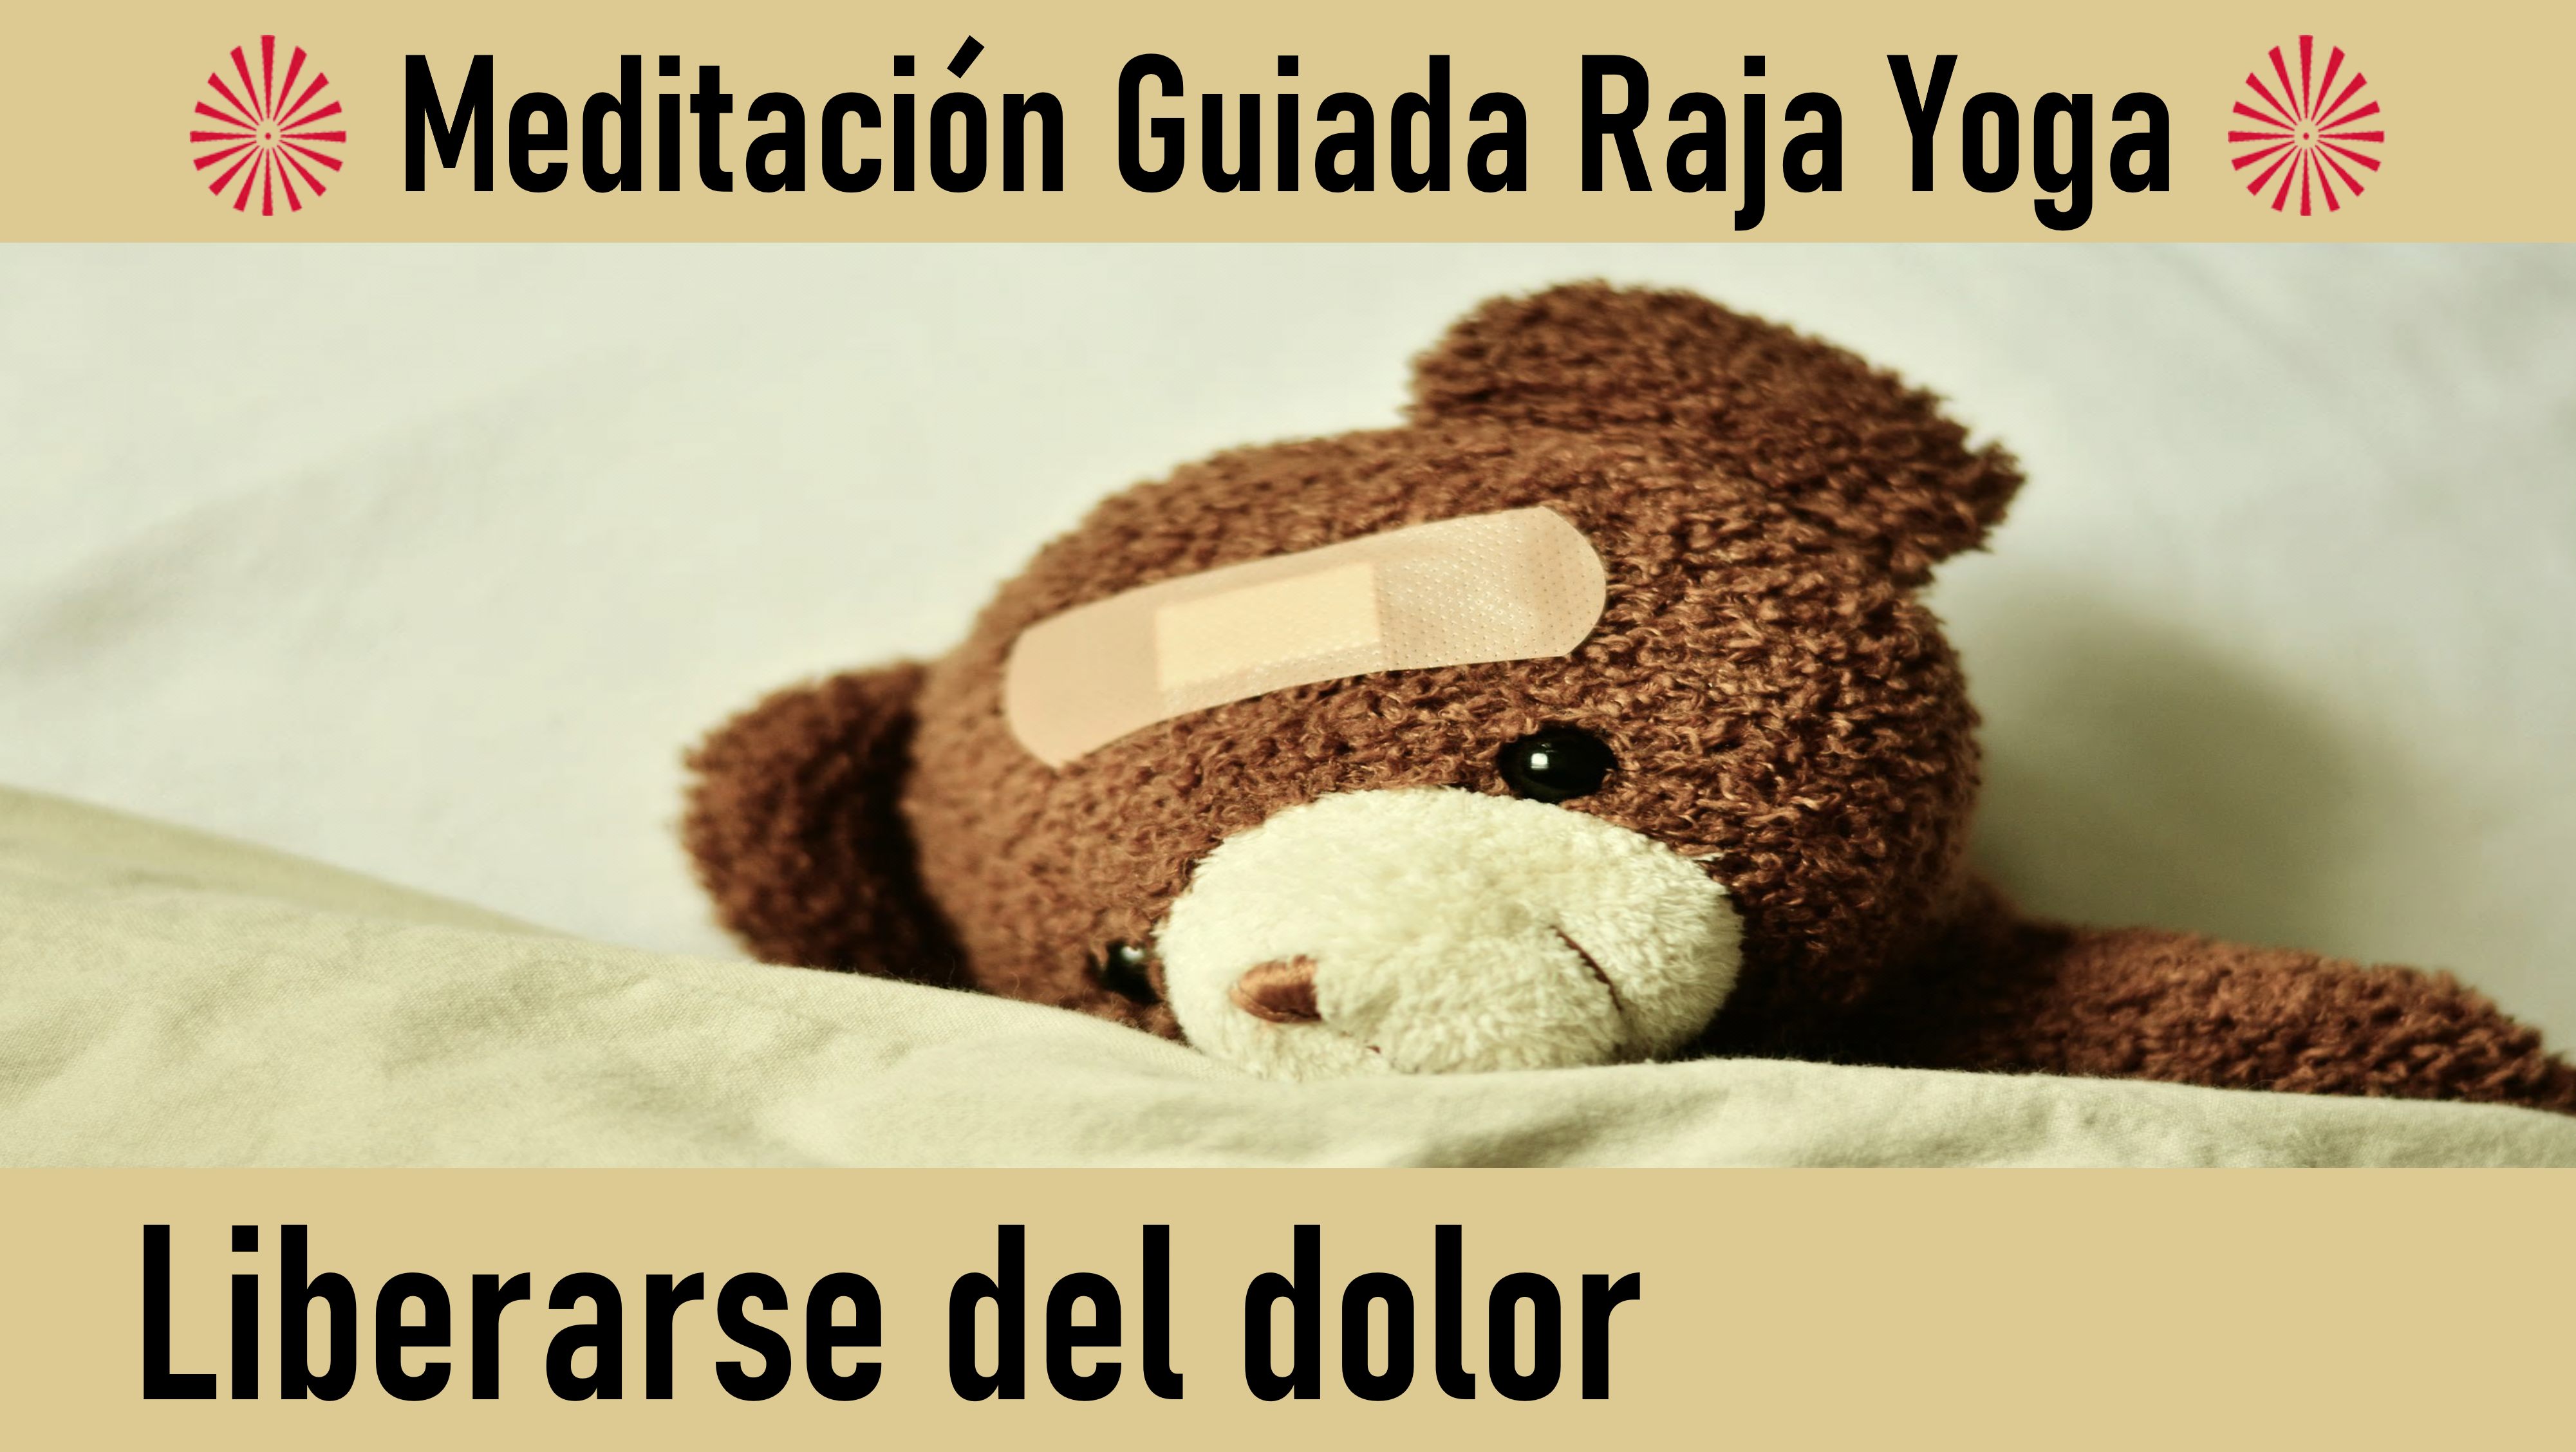 Charla y Meditación.Meditación Raja Yoga: Liberarse del dolor (13 Mayon 2020) On-line desde Sevilla